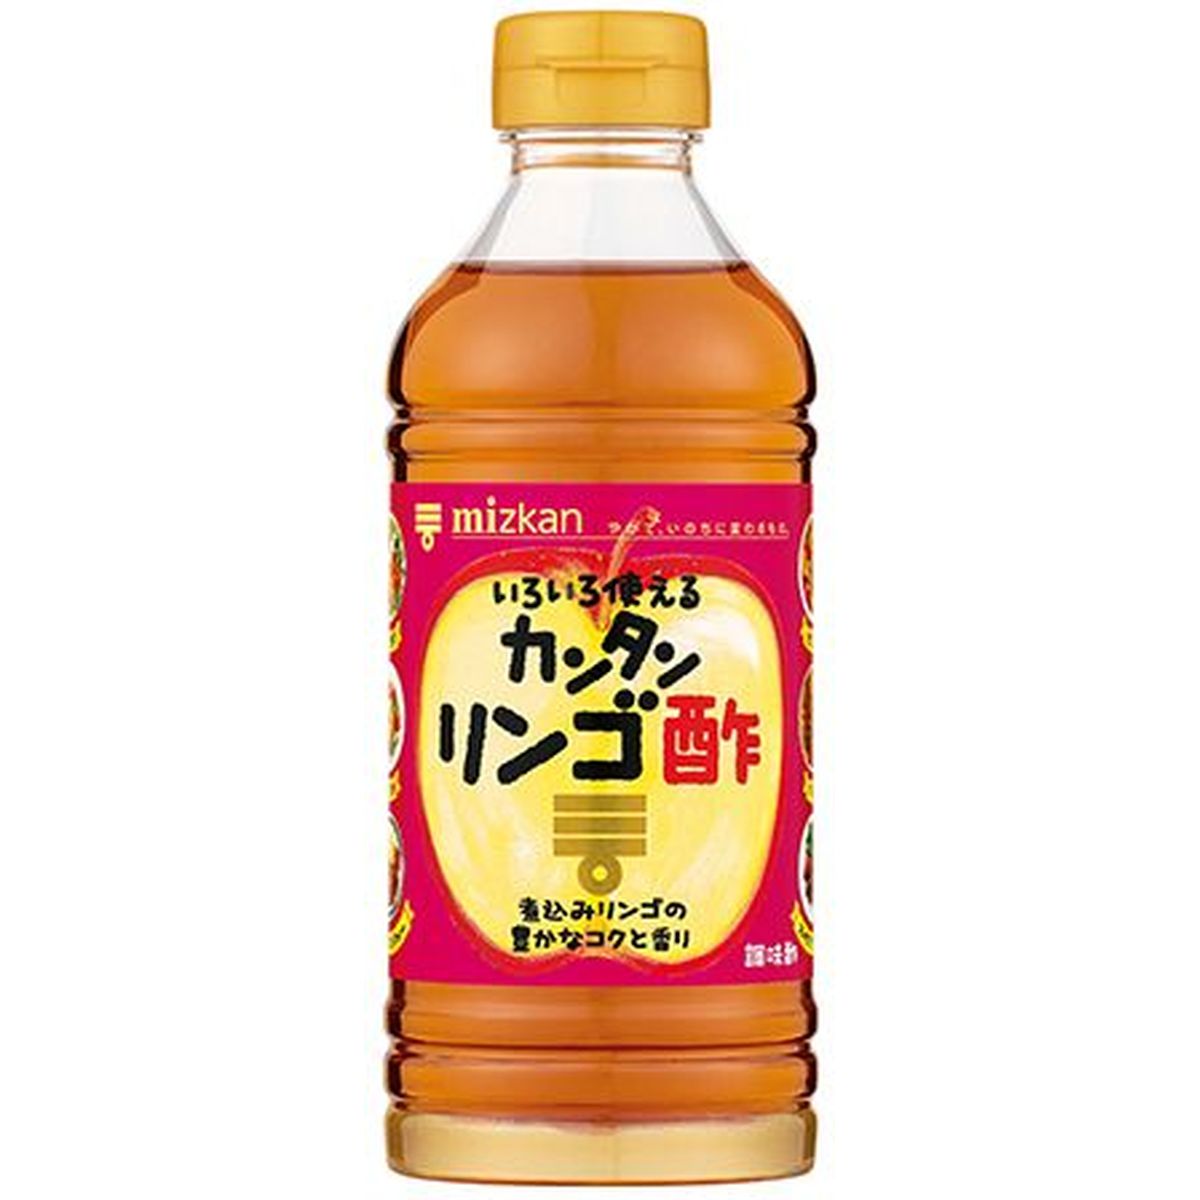 【12個入リ】ミツカン カンタンリンゴ酢 500ml